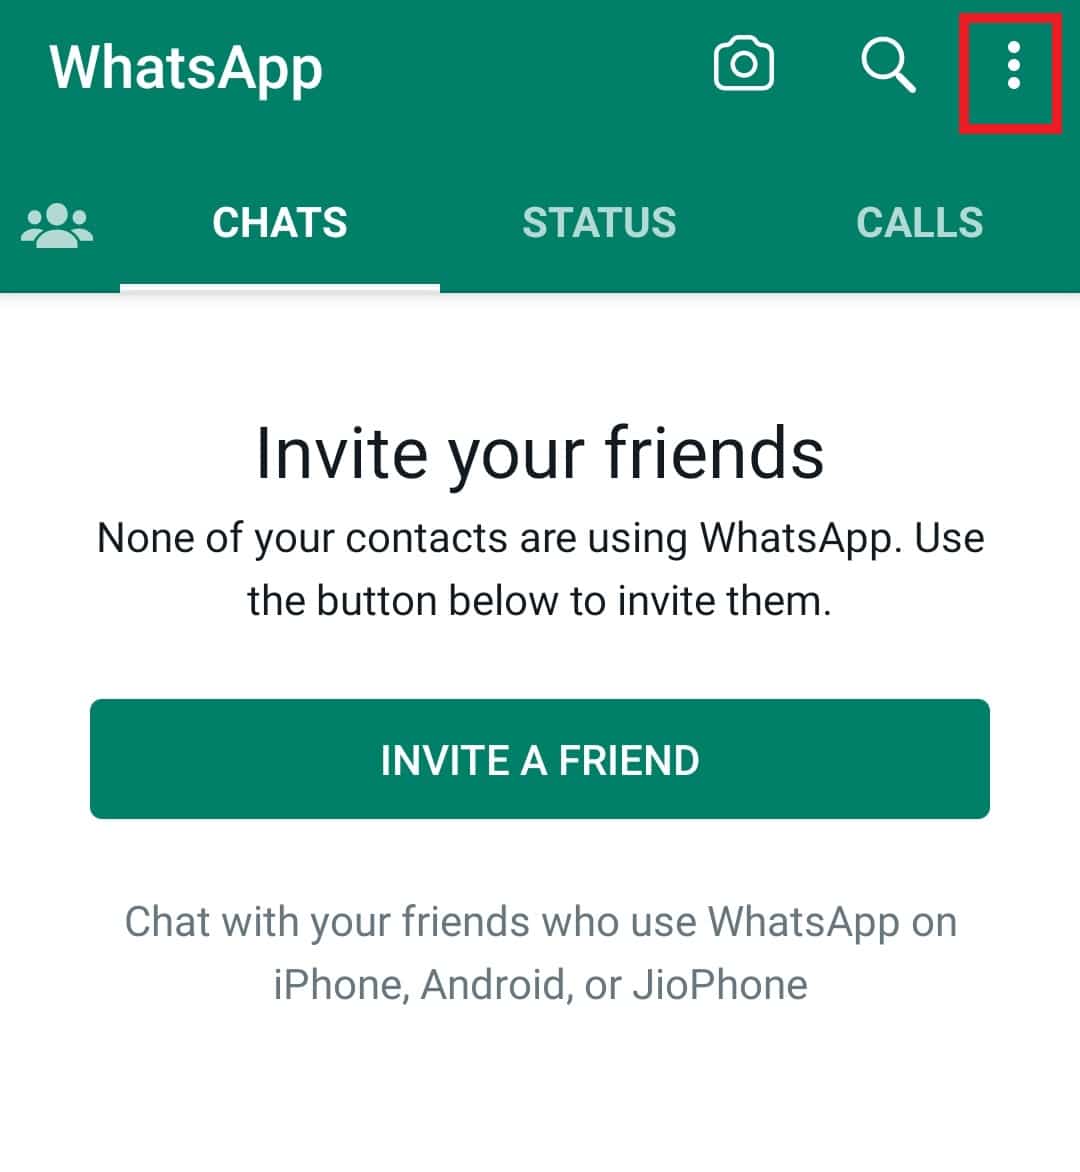 အစက်သုံးစက်ကို နှိပ်ပါ။ Android တွင် အဆက်အသွယ်များကို Syncing မလုပ်သော WhatsApp ကို ဖြေရှင်းရန် နည်းလမ်း 7 ခု